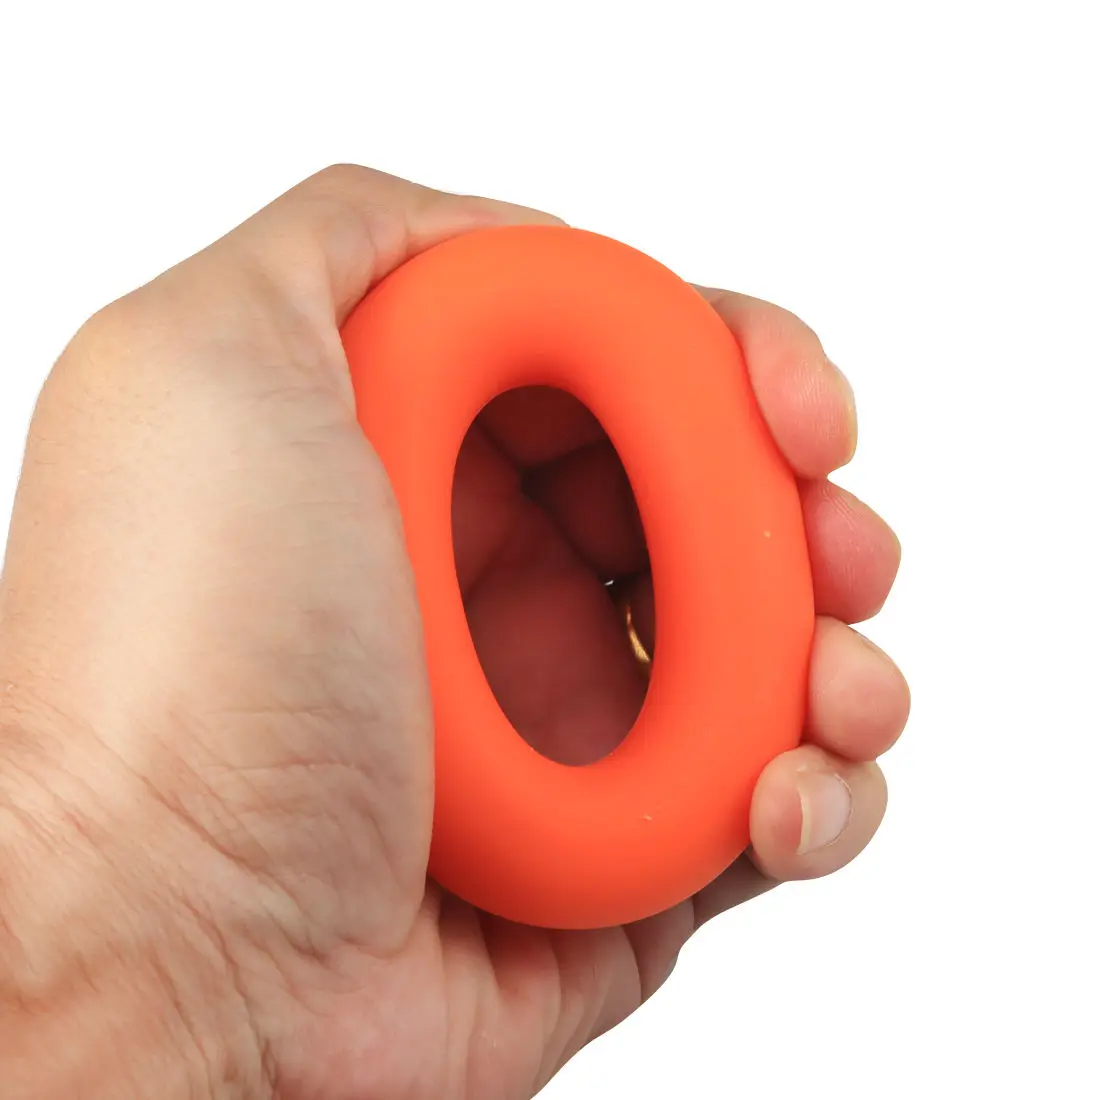 7 см захват пальцев кольца Спорт для тренировки мышц кистевой эспандер ручной Фитнес силиконовый захват Мощность прочность P15 - Цвет: Оранжевый